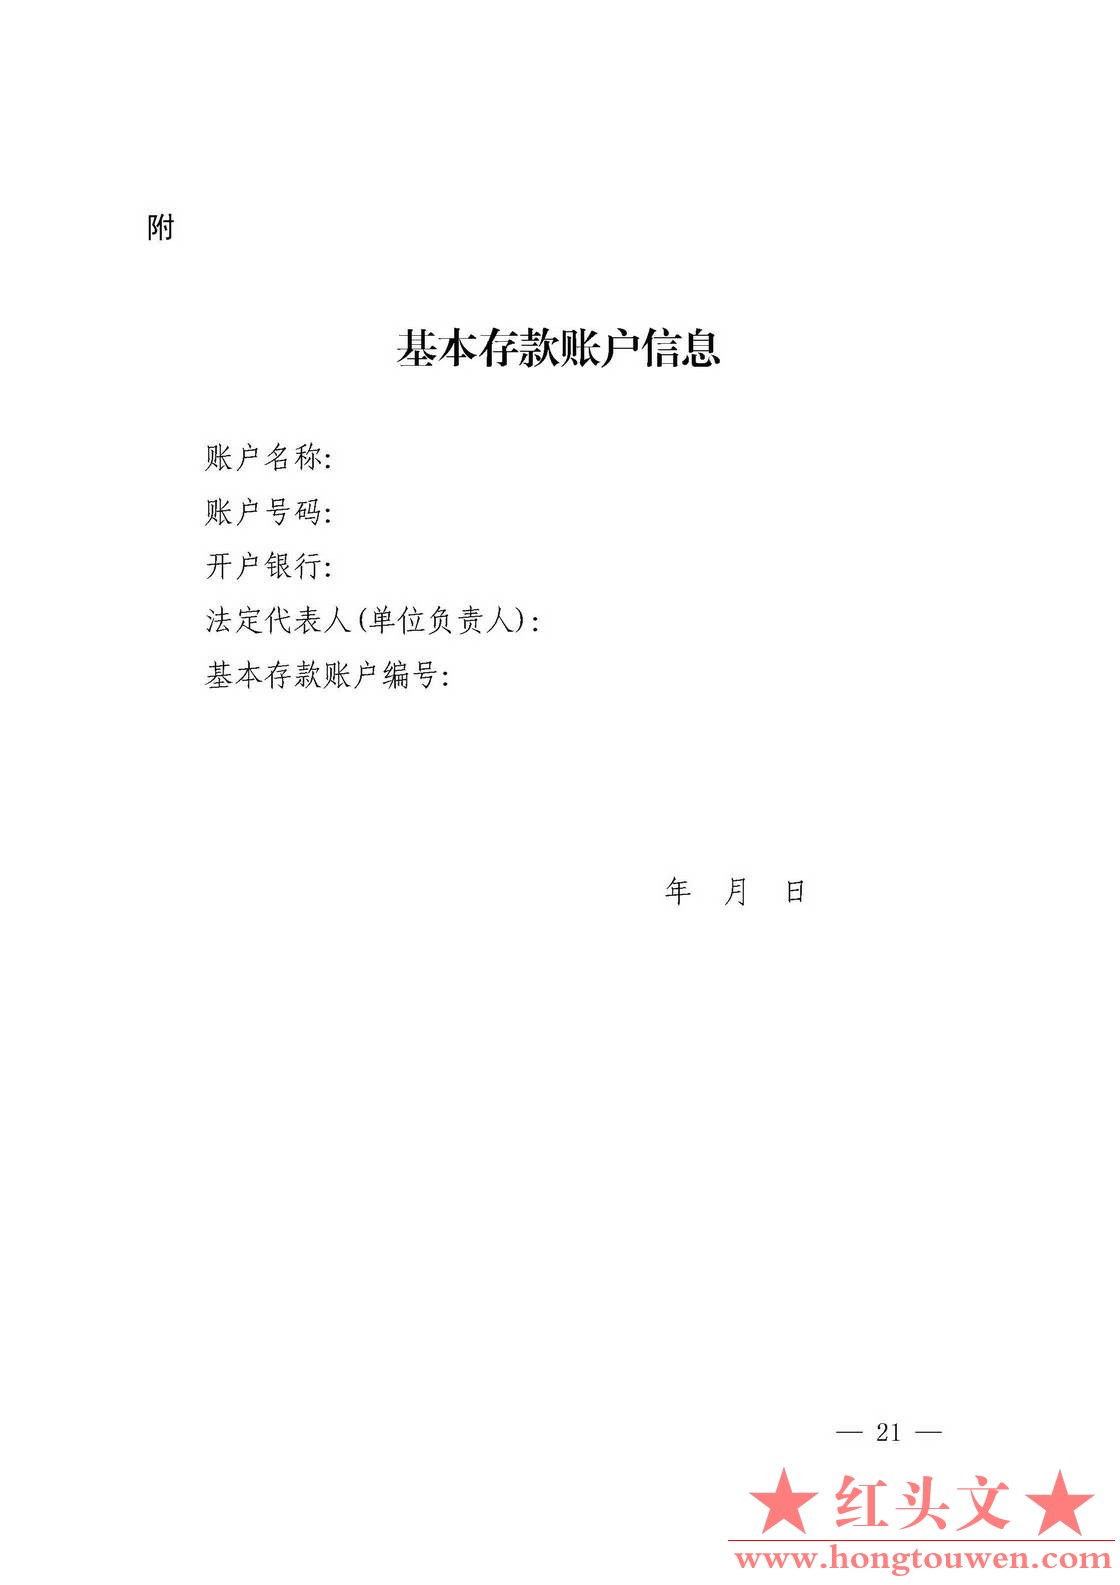 银发[2019]41号-中国人民银行关于取消企业银行账户许可的通知_页面_21.jpg.jpg